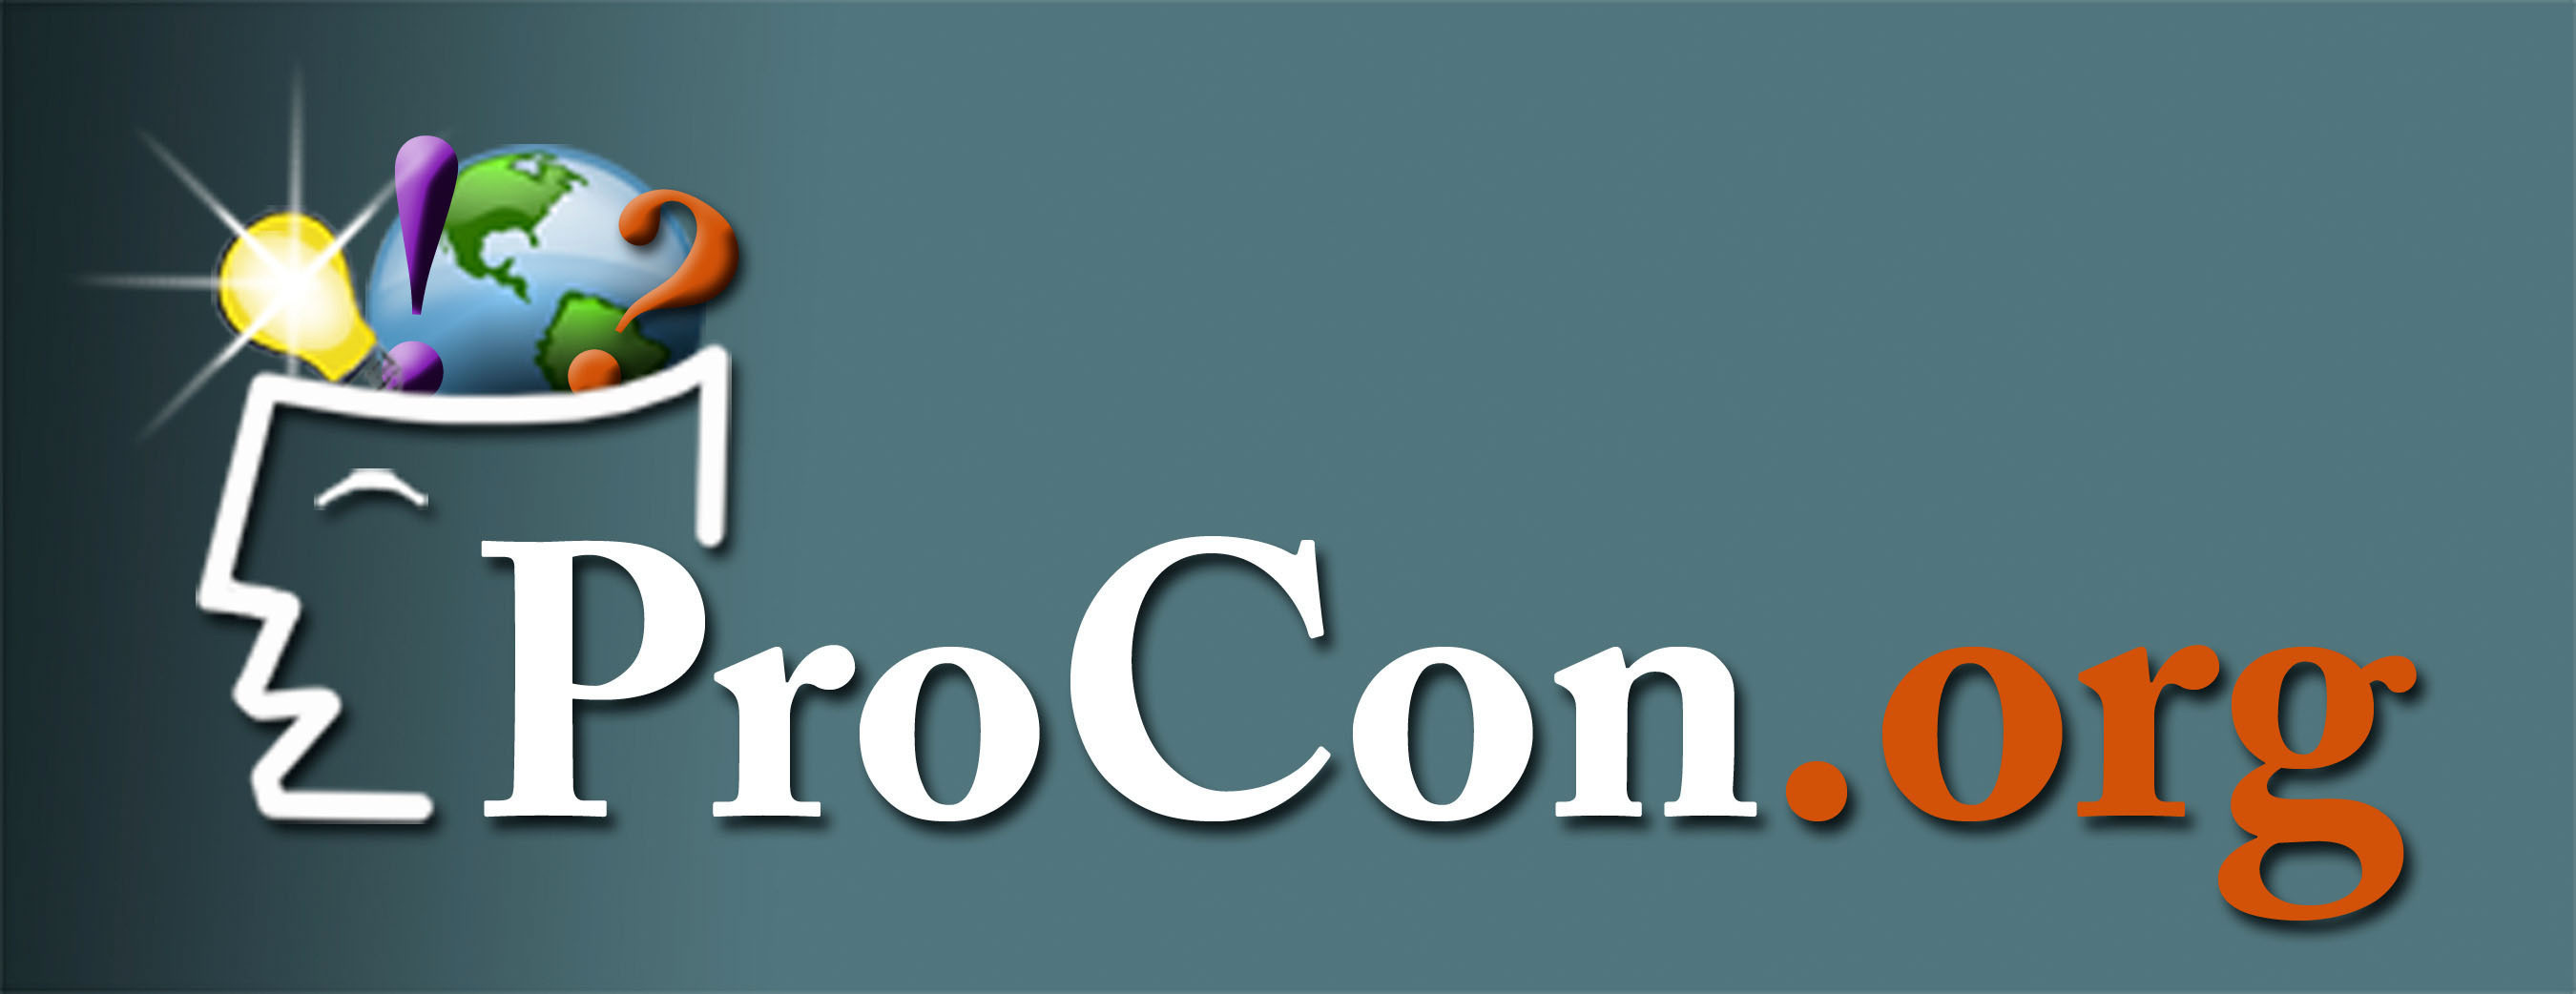 ProCon.org logo